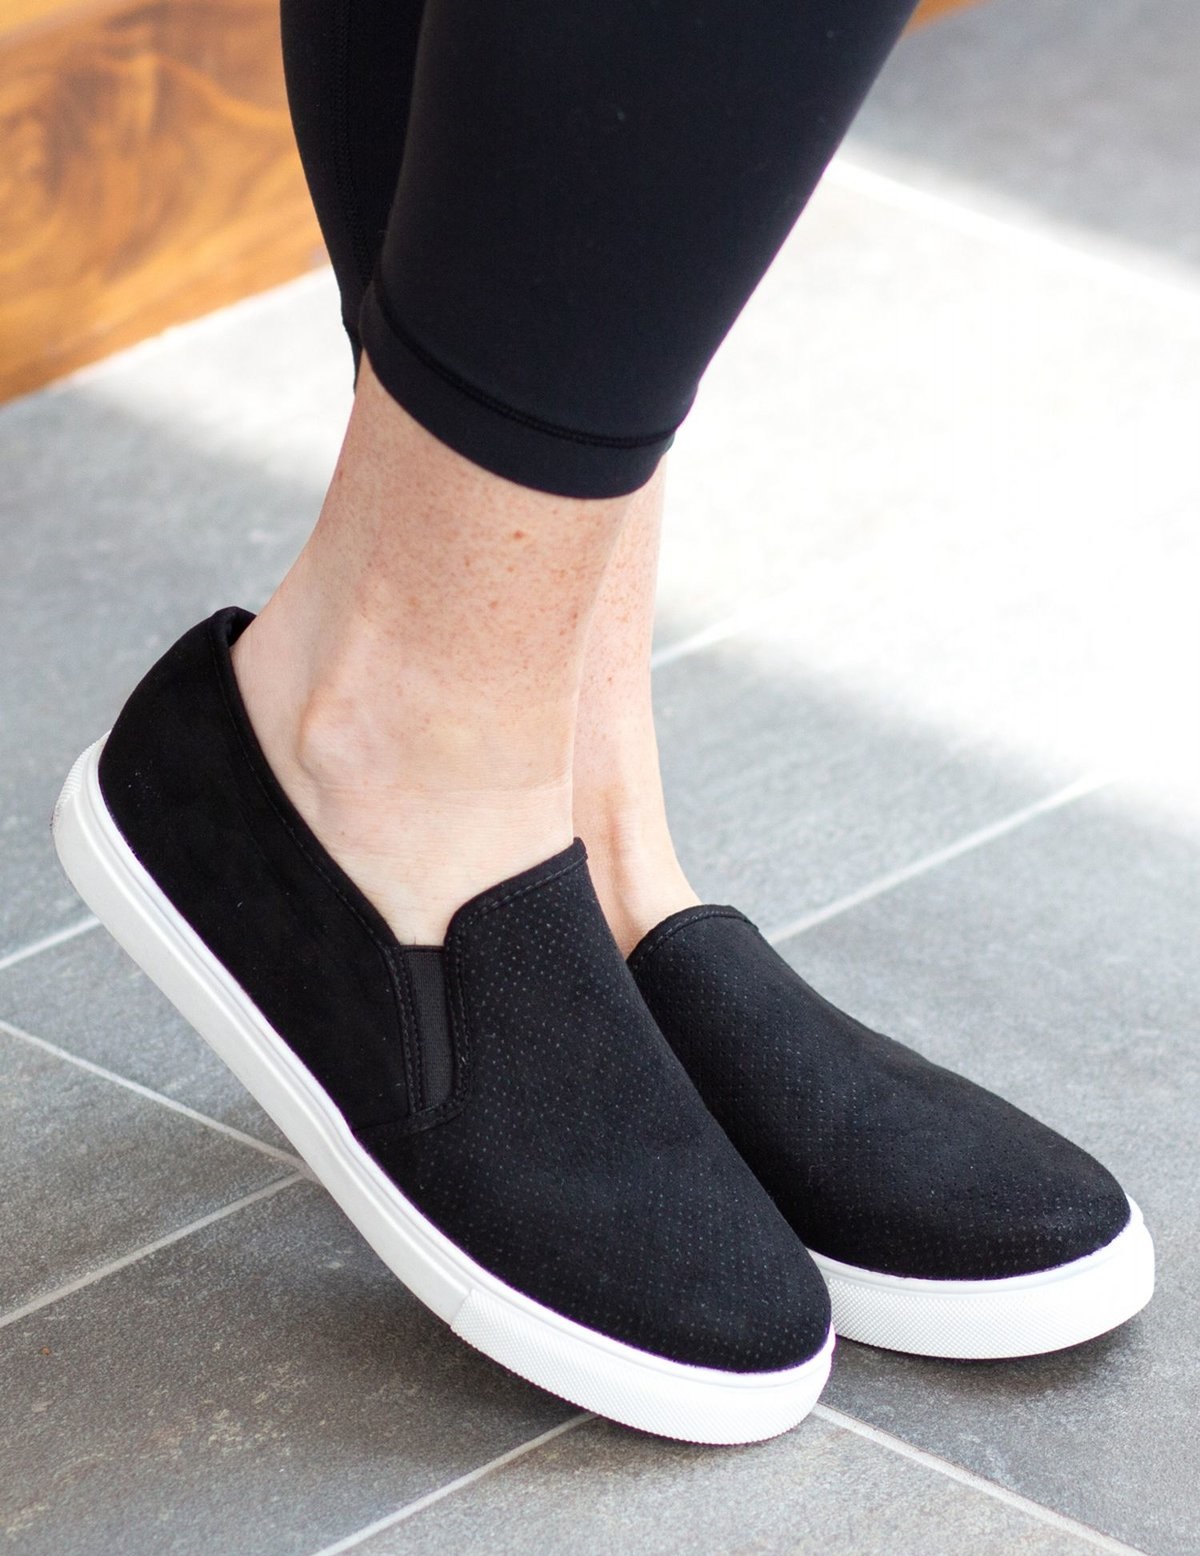 Ботинки на резиновой подошве. Слипоны (Slip-on) обувь 2021. Слипоны Black (черный), 40. Женская обувь Патрол чёрные с белой подошвой.